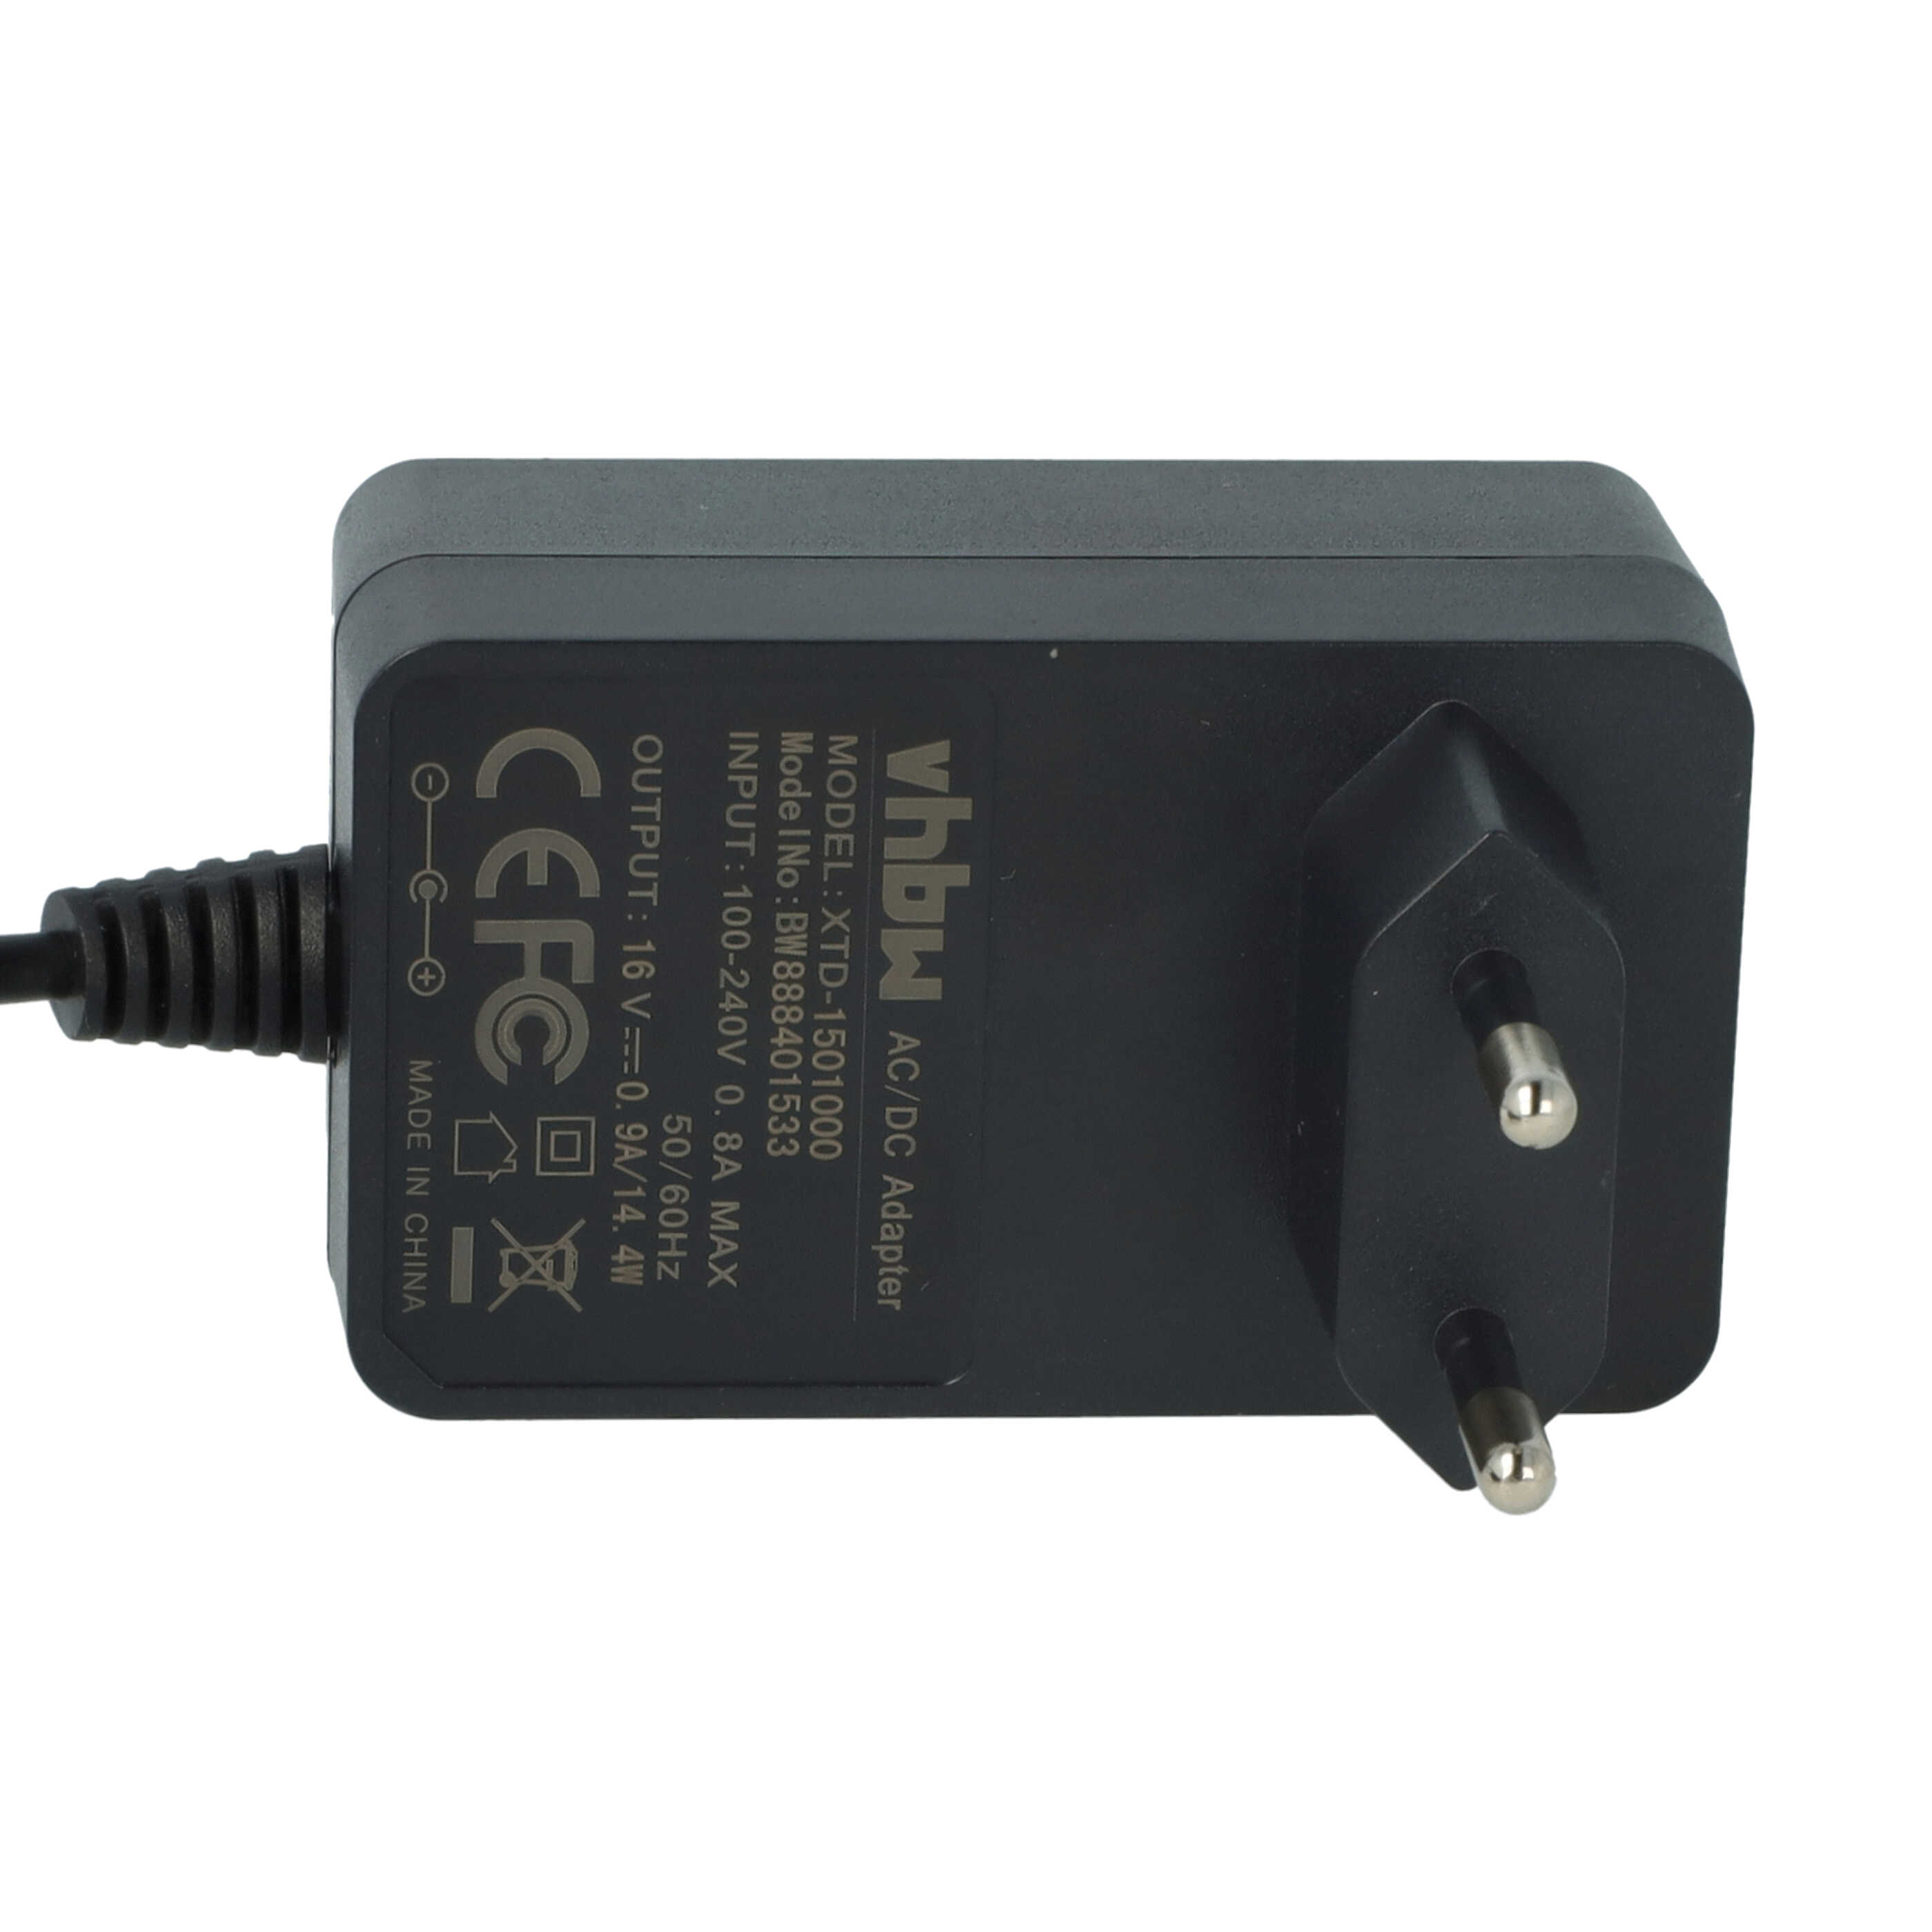 Chargeur pour aspirateur robot rechange pour Philips CP0498/01, FC879601, 432200610401